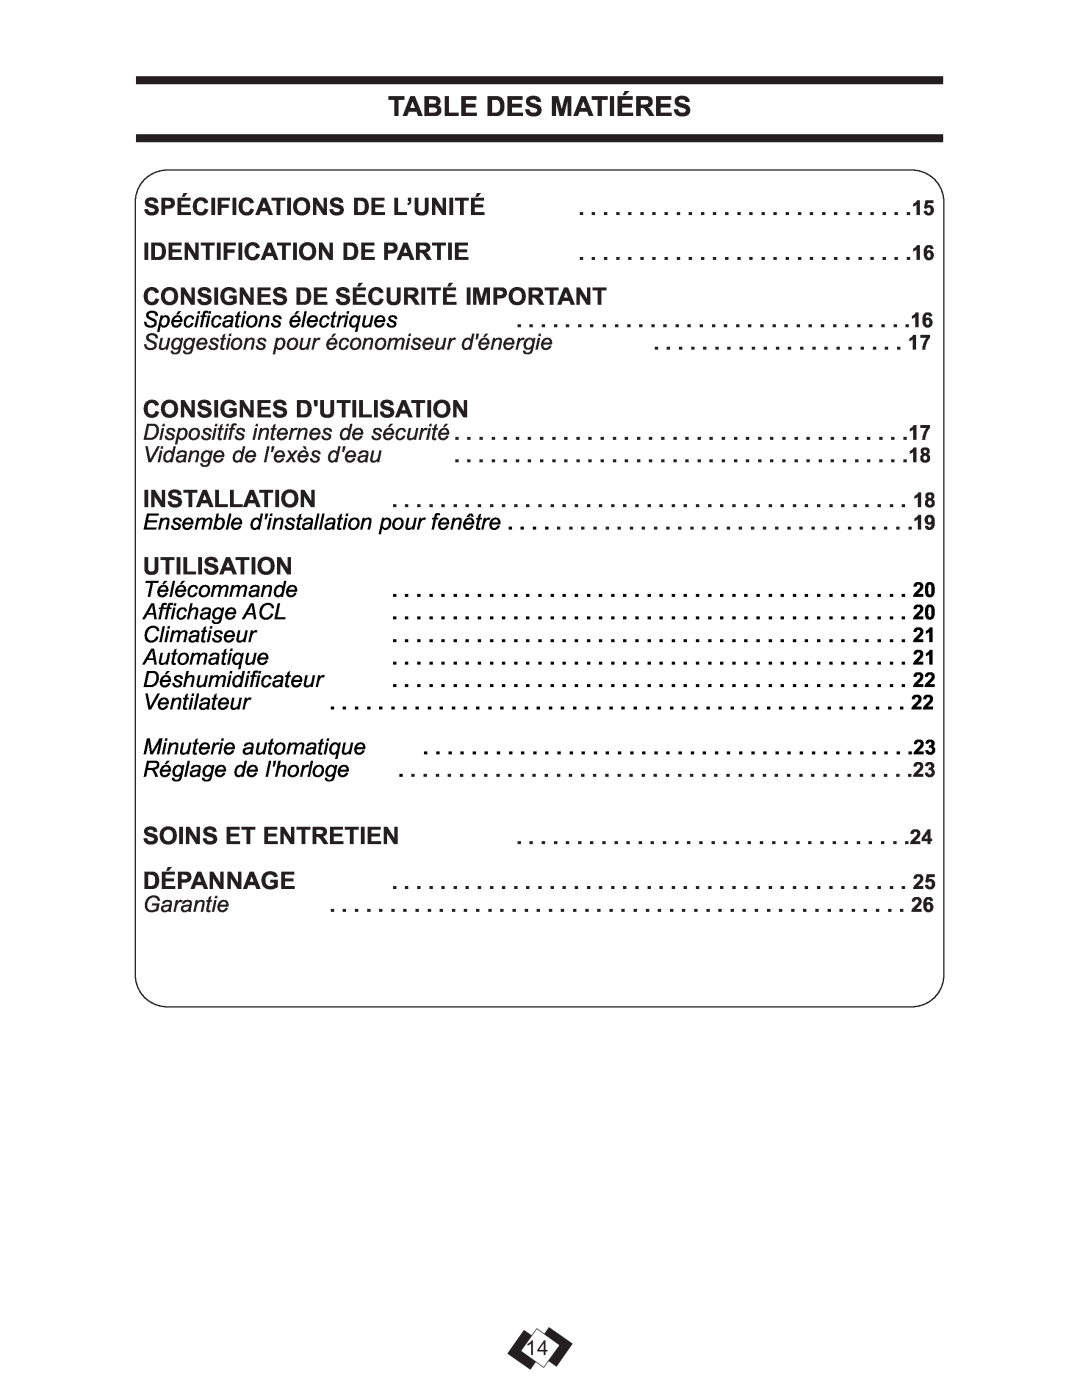 Danby DPAC 13009 Table Des Matiéres, Consignes De Sécurité Important, Consignes Dutilisation, Utilisation 